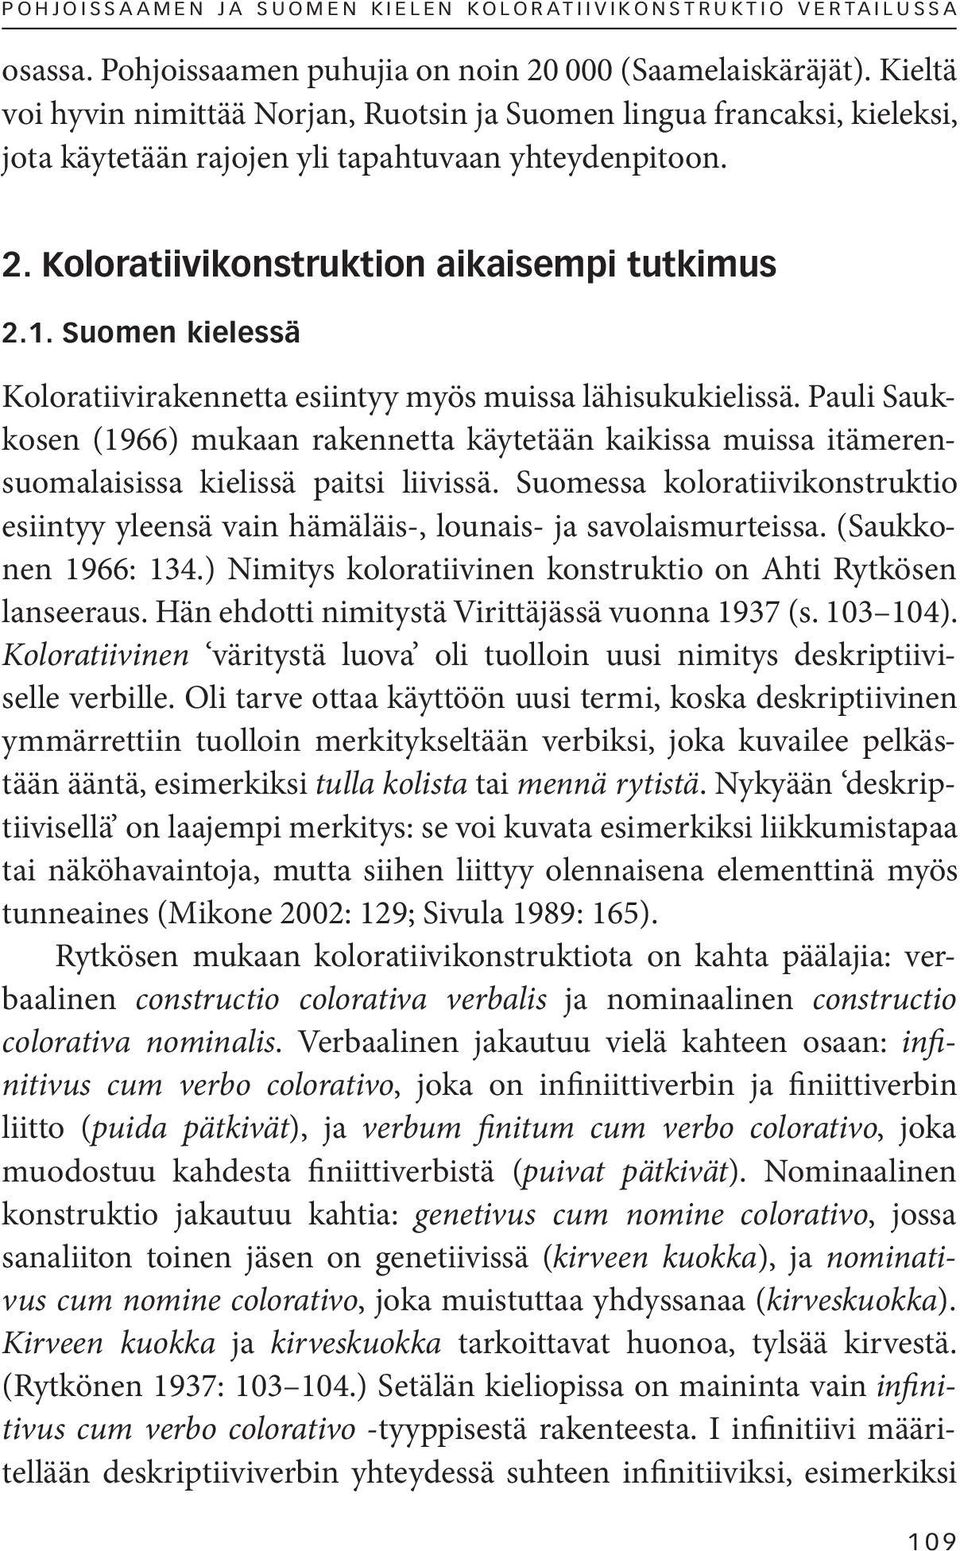 Suomen kielessä Koloratiivirakennetta esiintyy myös muissa lähisukukielissä. Pauli Saukkosen (1966) mukaan rakennetta käytetään kaikissa muissa itämerensuomalaisissa kielissä paitsi liivissä.